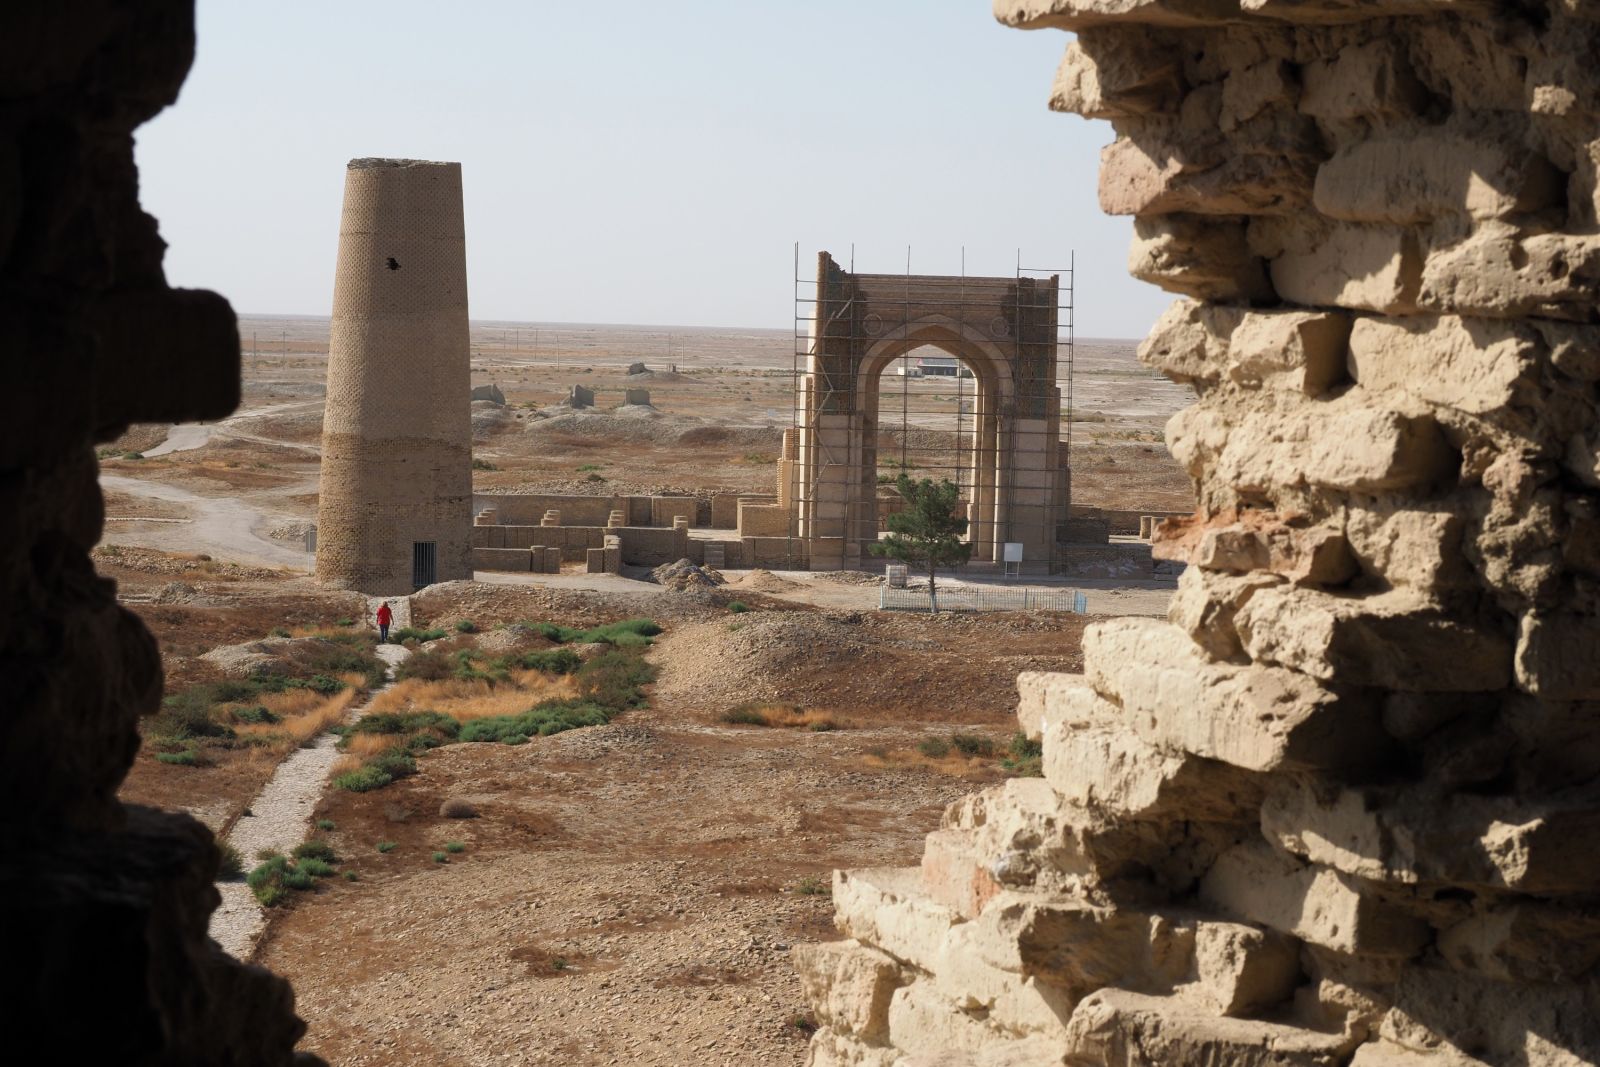 Dekhistan – von der einstigen Stadt sind neben Mauerresten nur noch zwei Minarette und der wiederausfgebaute Iwan zu besichtigen